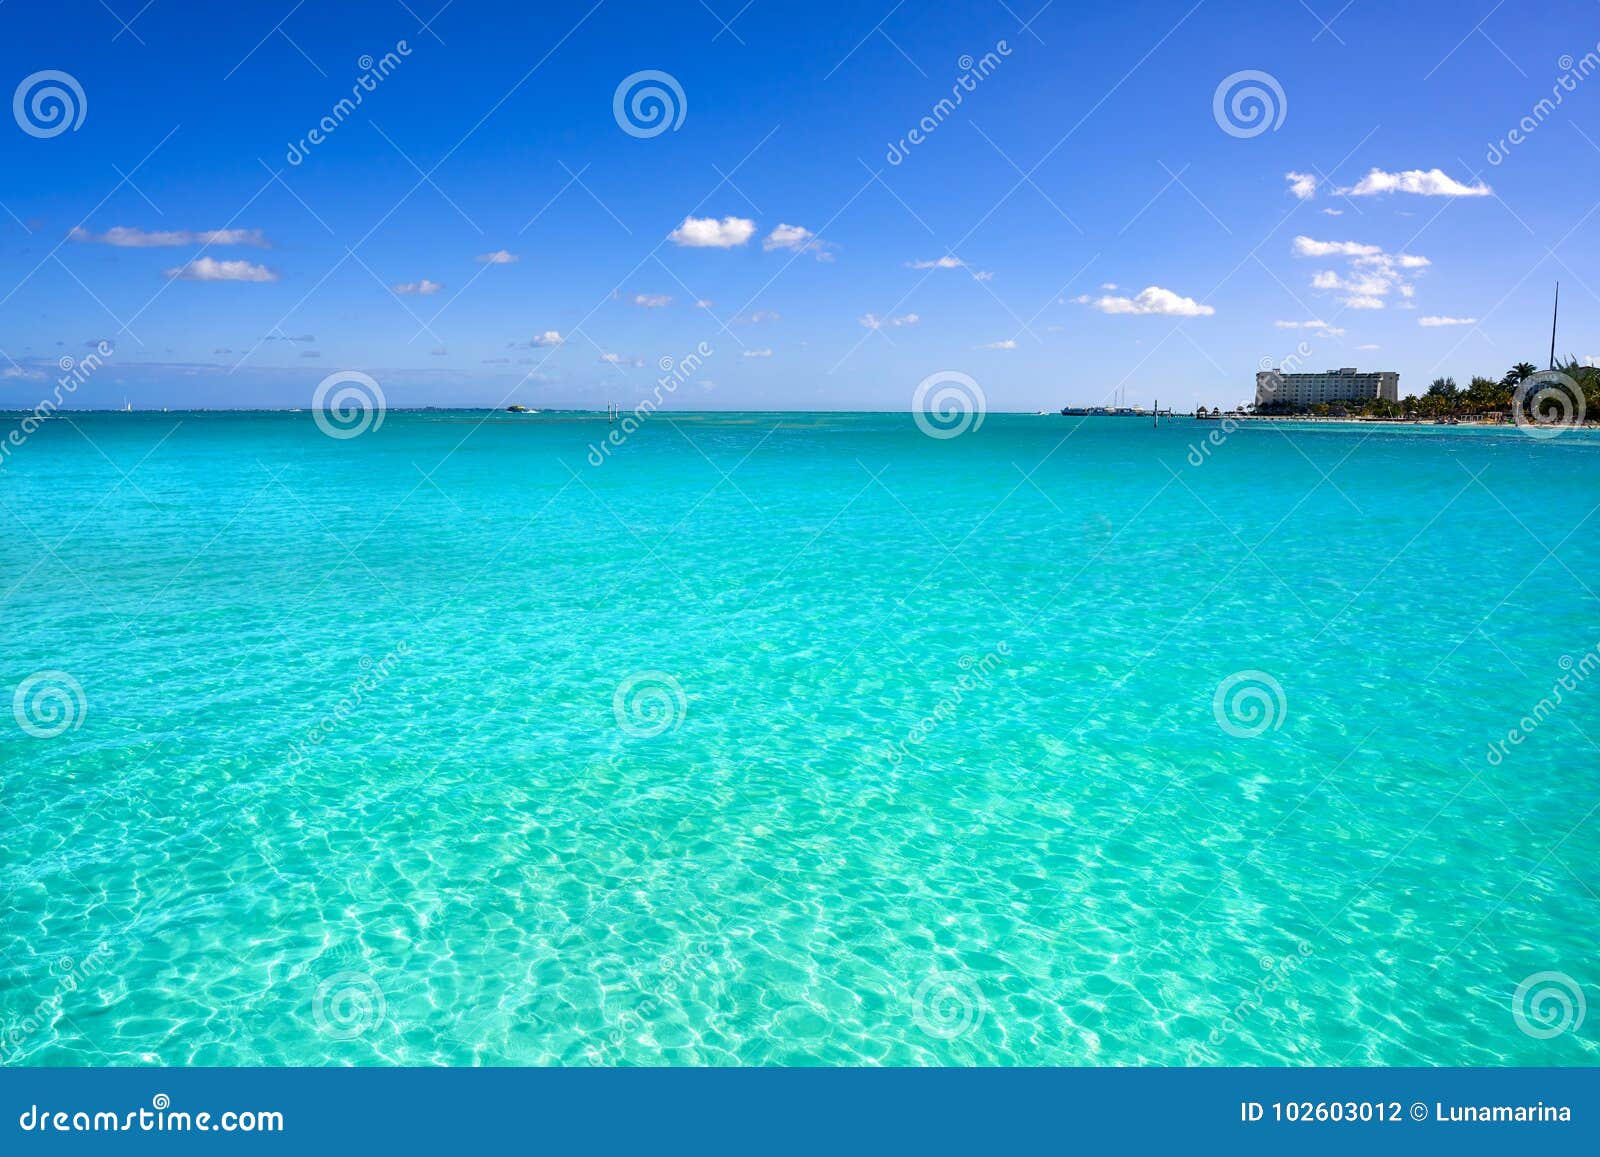 cancun playa linda beach in hotel zone